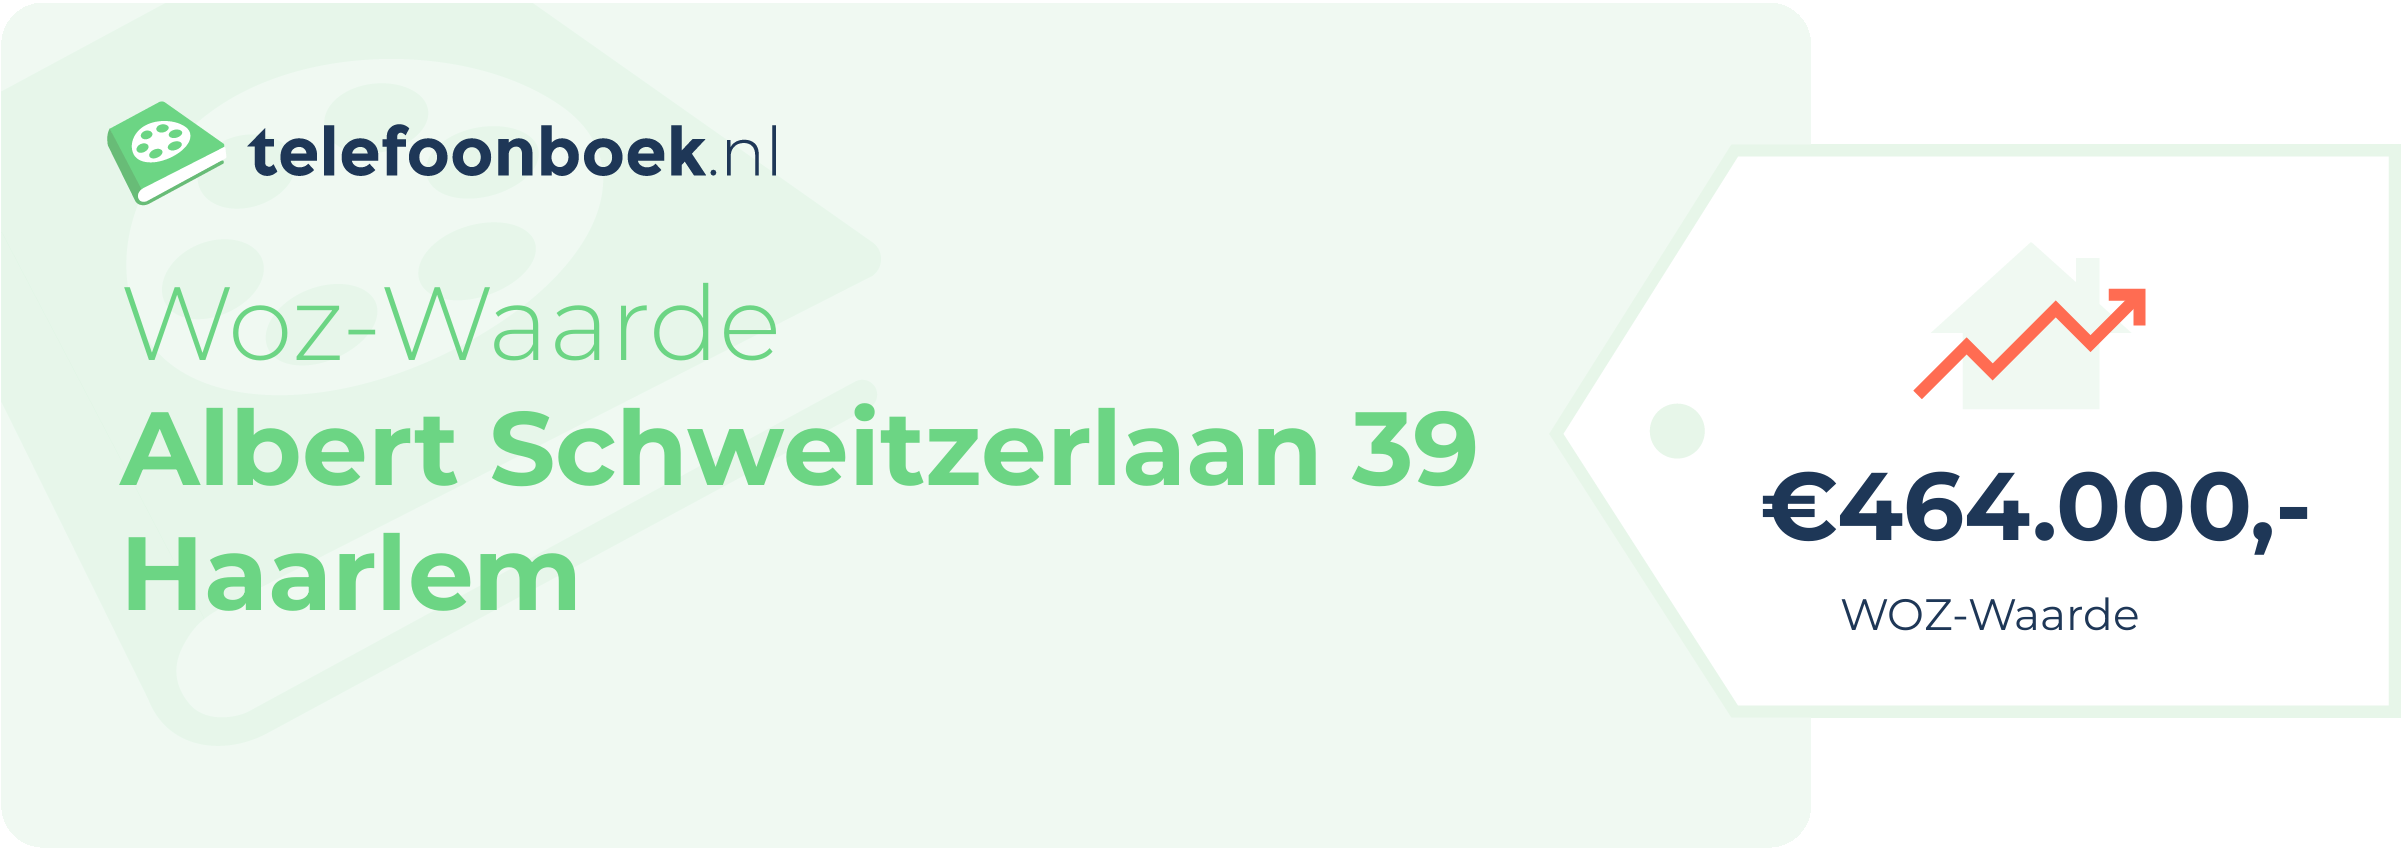 WOZ-waarde Albert Schweitzerlaan 39 Haarlem